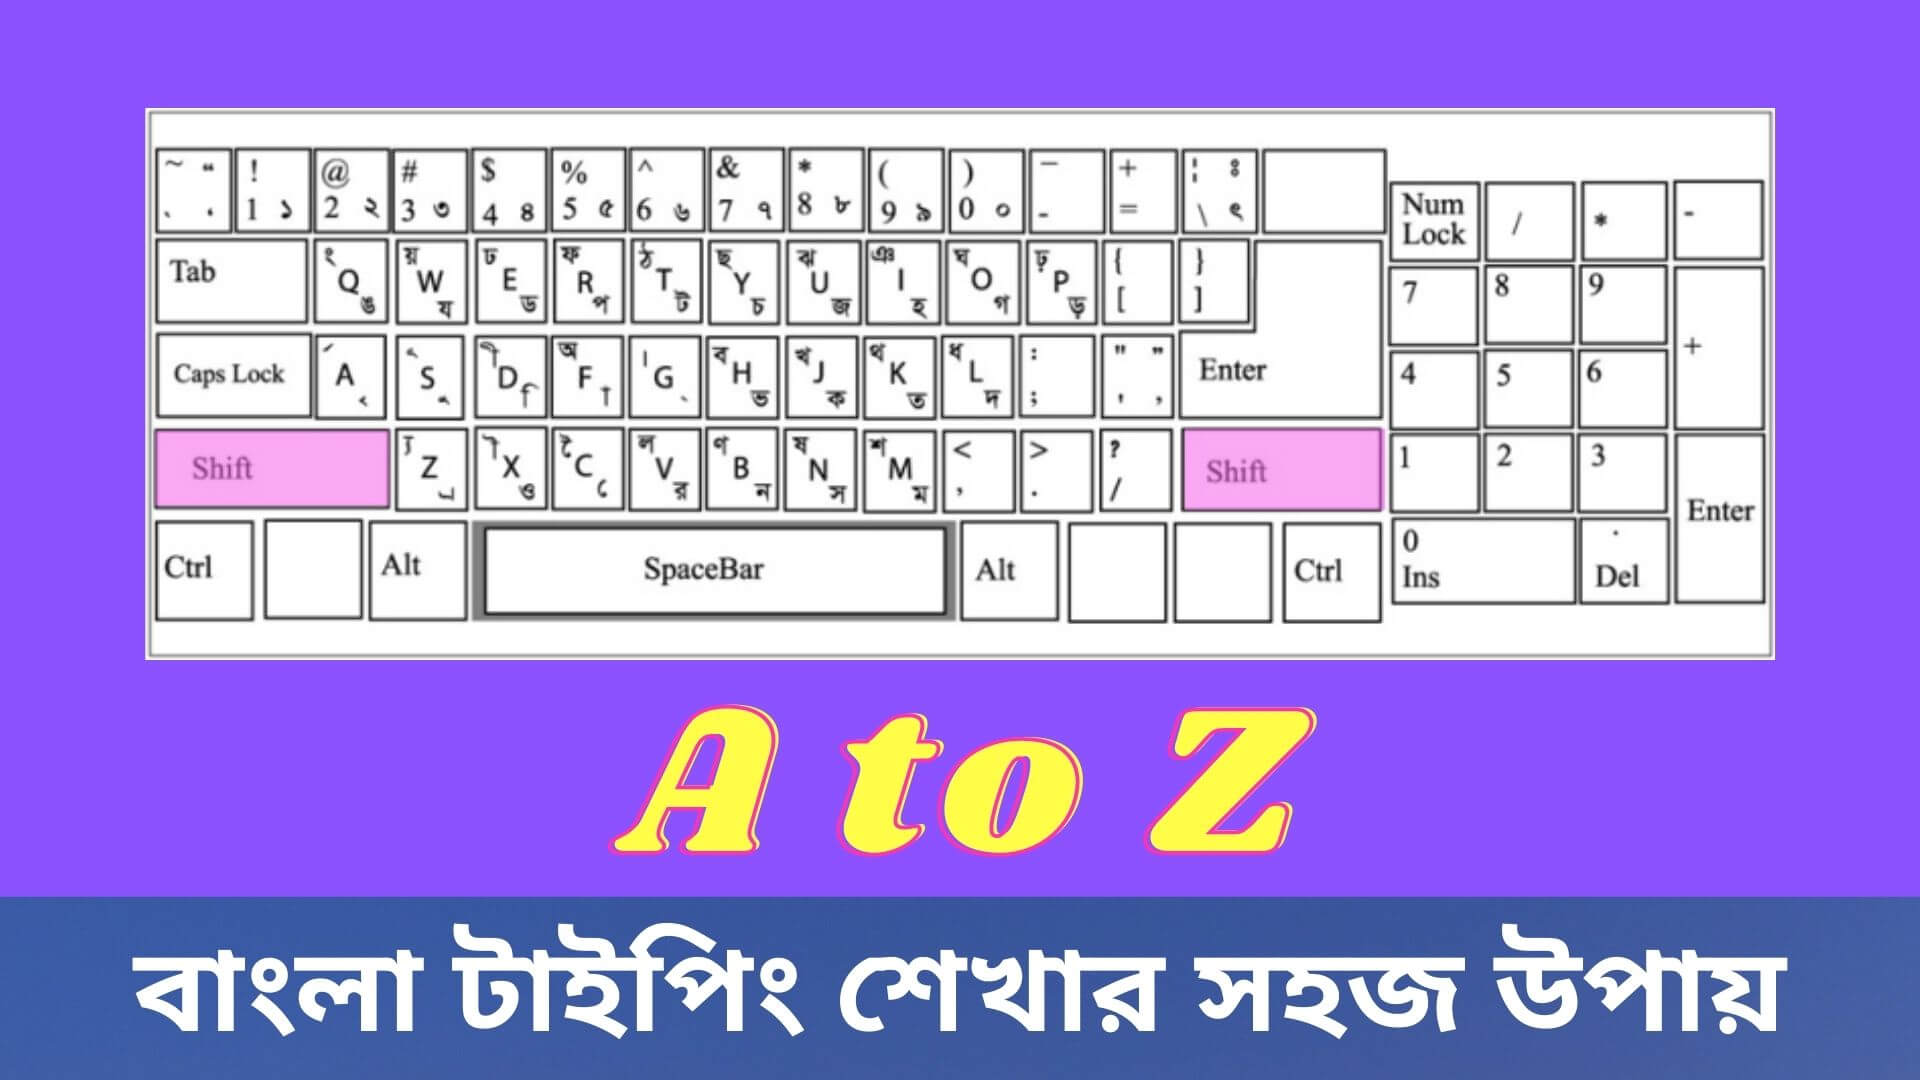 বাংলা টাইপিং শেখার সহজ উপায় | Bangla Typing Online